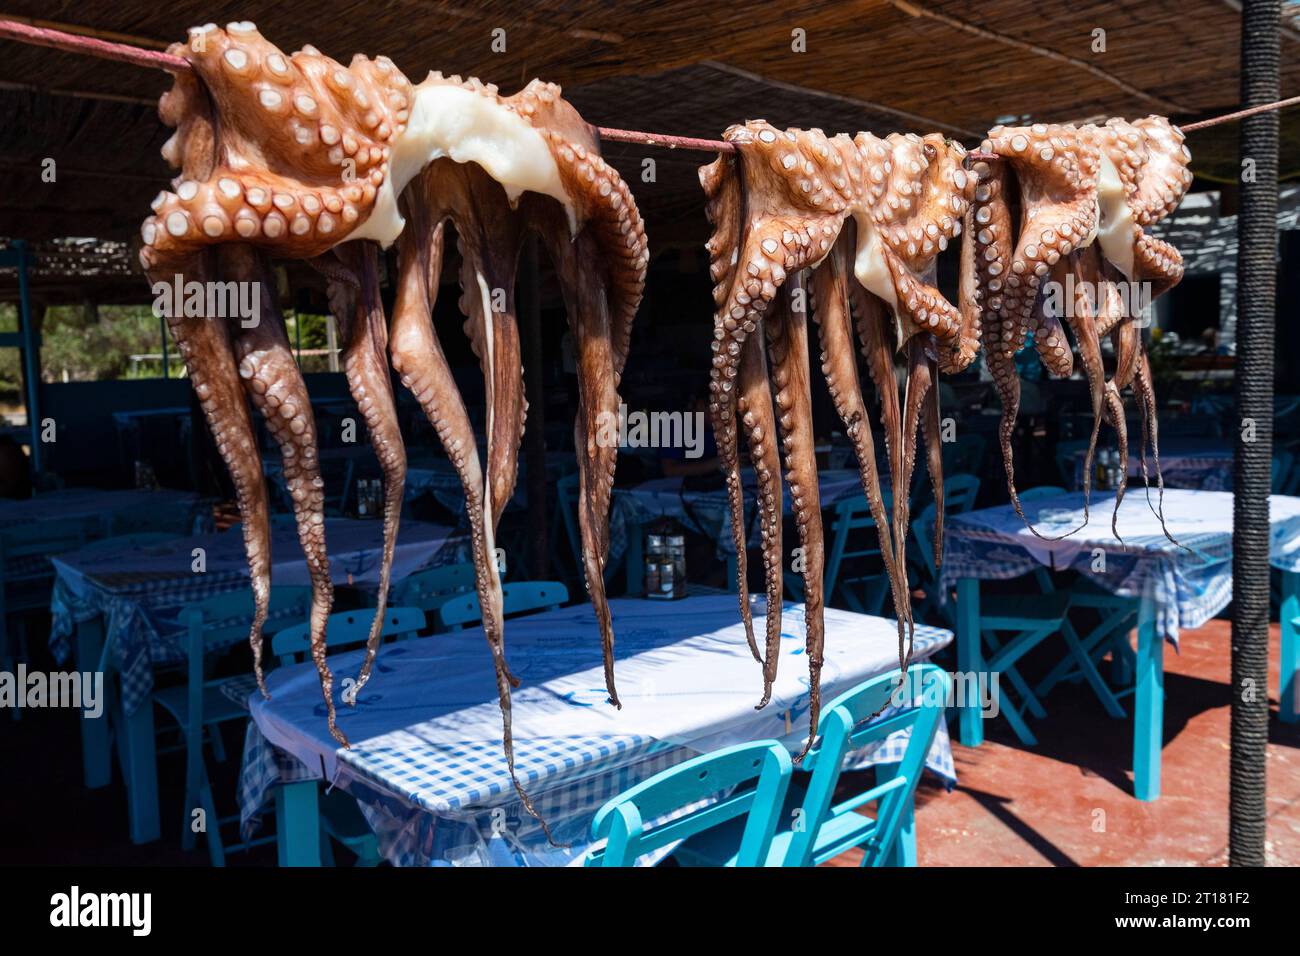 Tintenfisch, Oktopus (Octopus vulgaris) trocknet in der Sonne in einem Restaurant, Rhodos, Griechenland Stockfoto